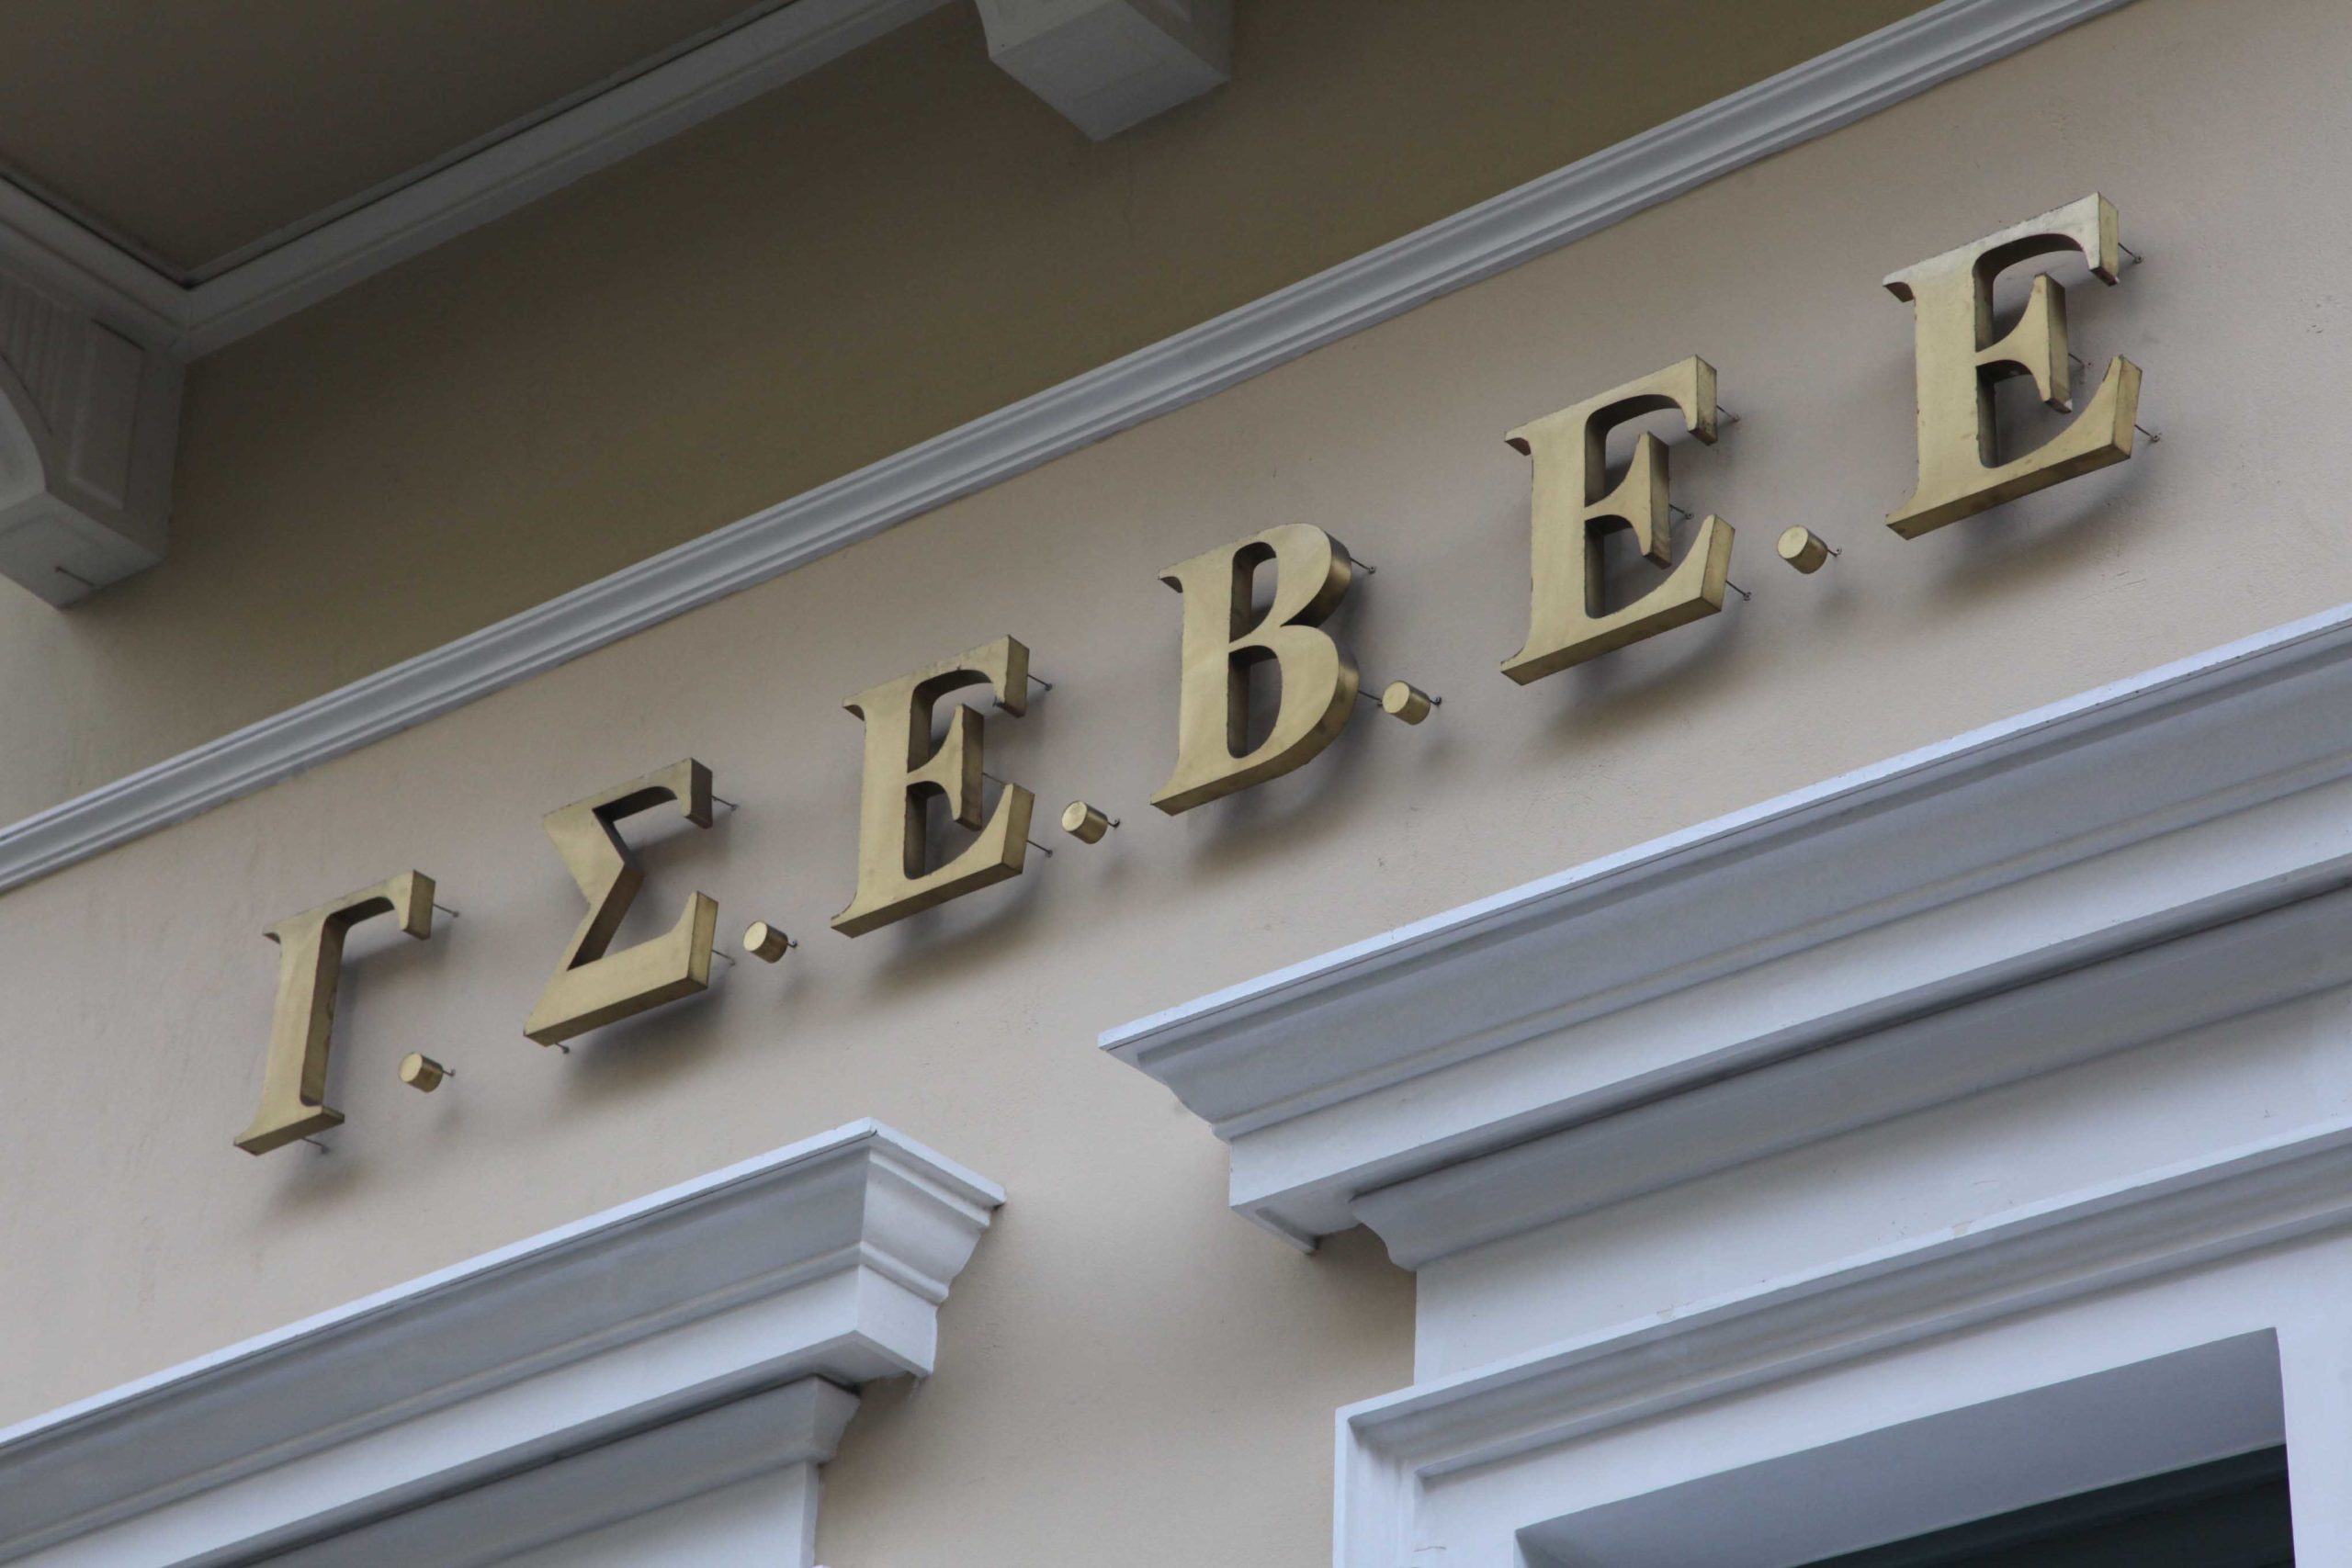 ΓΣΕΒΕΕ: Ανεπιτυχής προσπάθεια της κυβέρνησης να αυξήσει τα έσοδά της